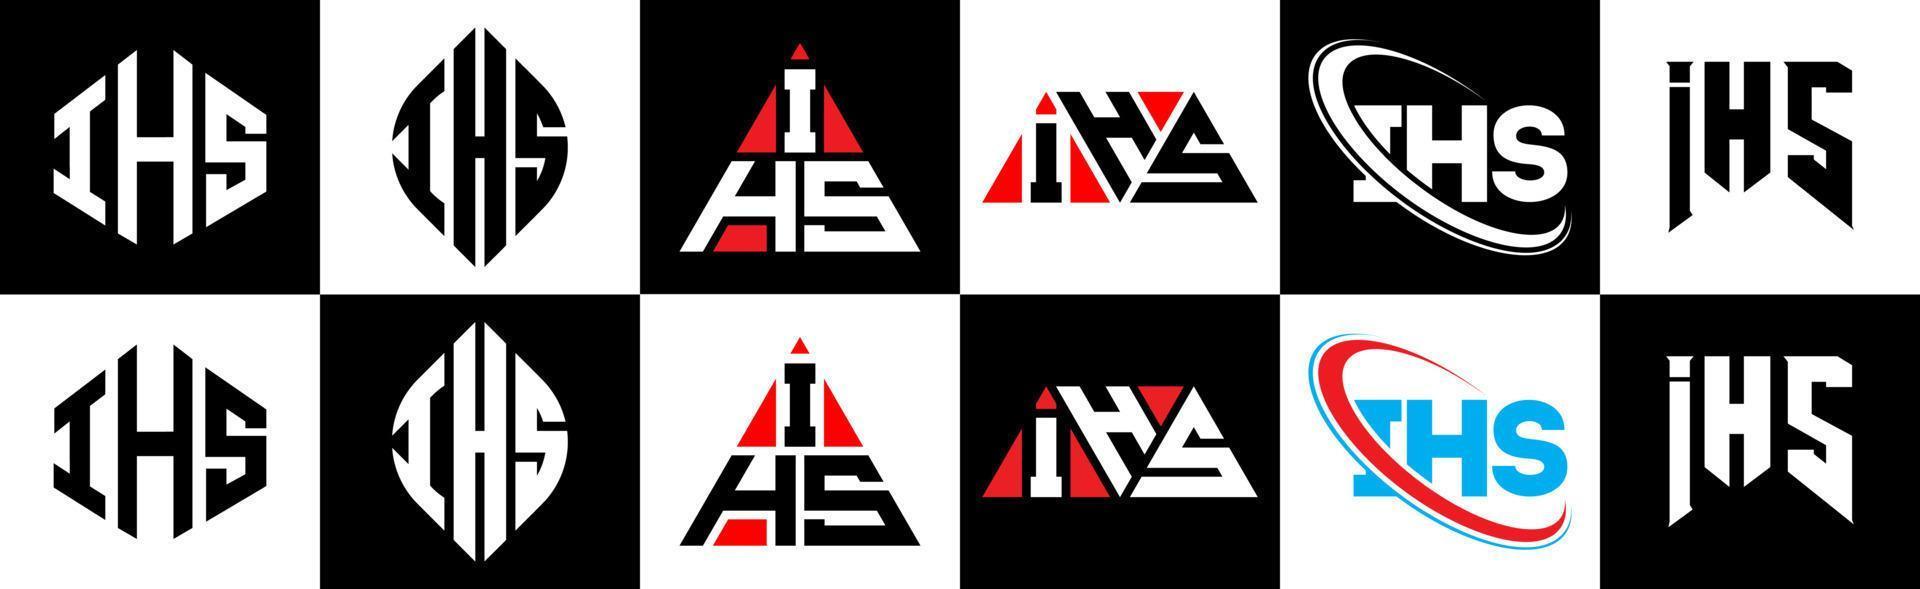 ihs-Buchstaben-Logo-Design in sechs Stilen. Ihs Polygon, Kreis, Dreieck, Sechseck, flacher und einfacher Stil mit schwarz-weißem Buchstabenlogo in einer Zeichenfläche. ihs minimalistisches und klassisches Logo vektor